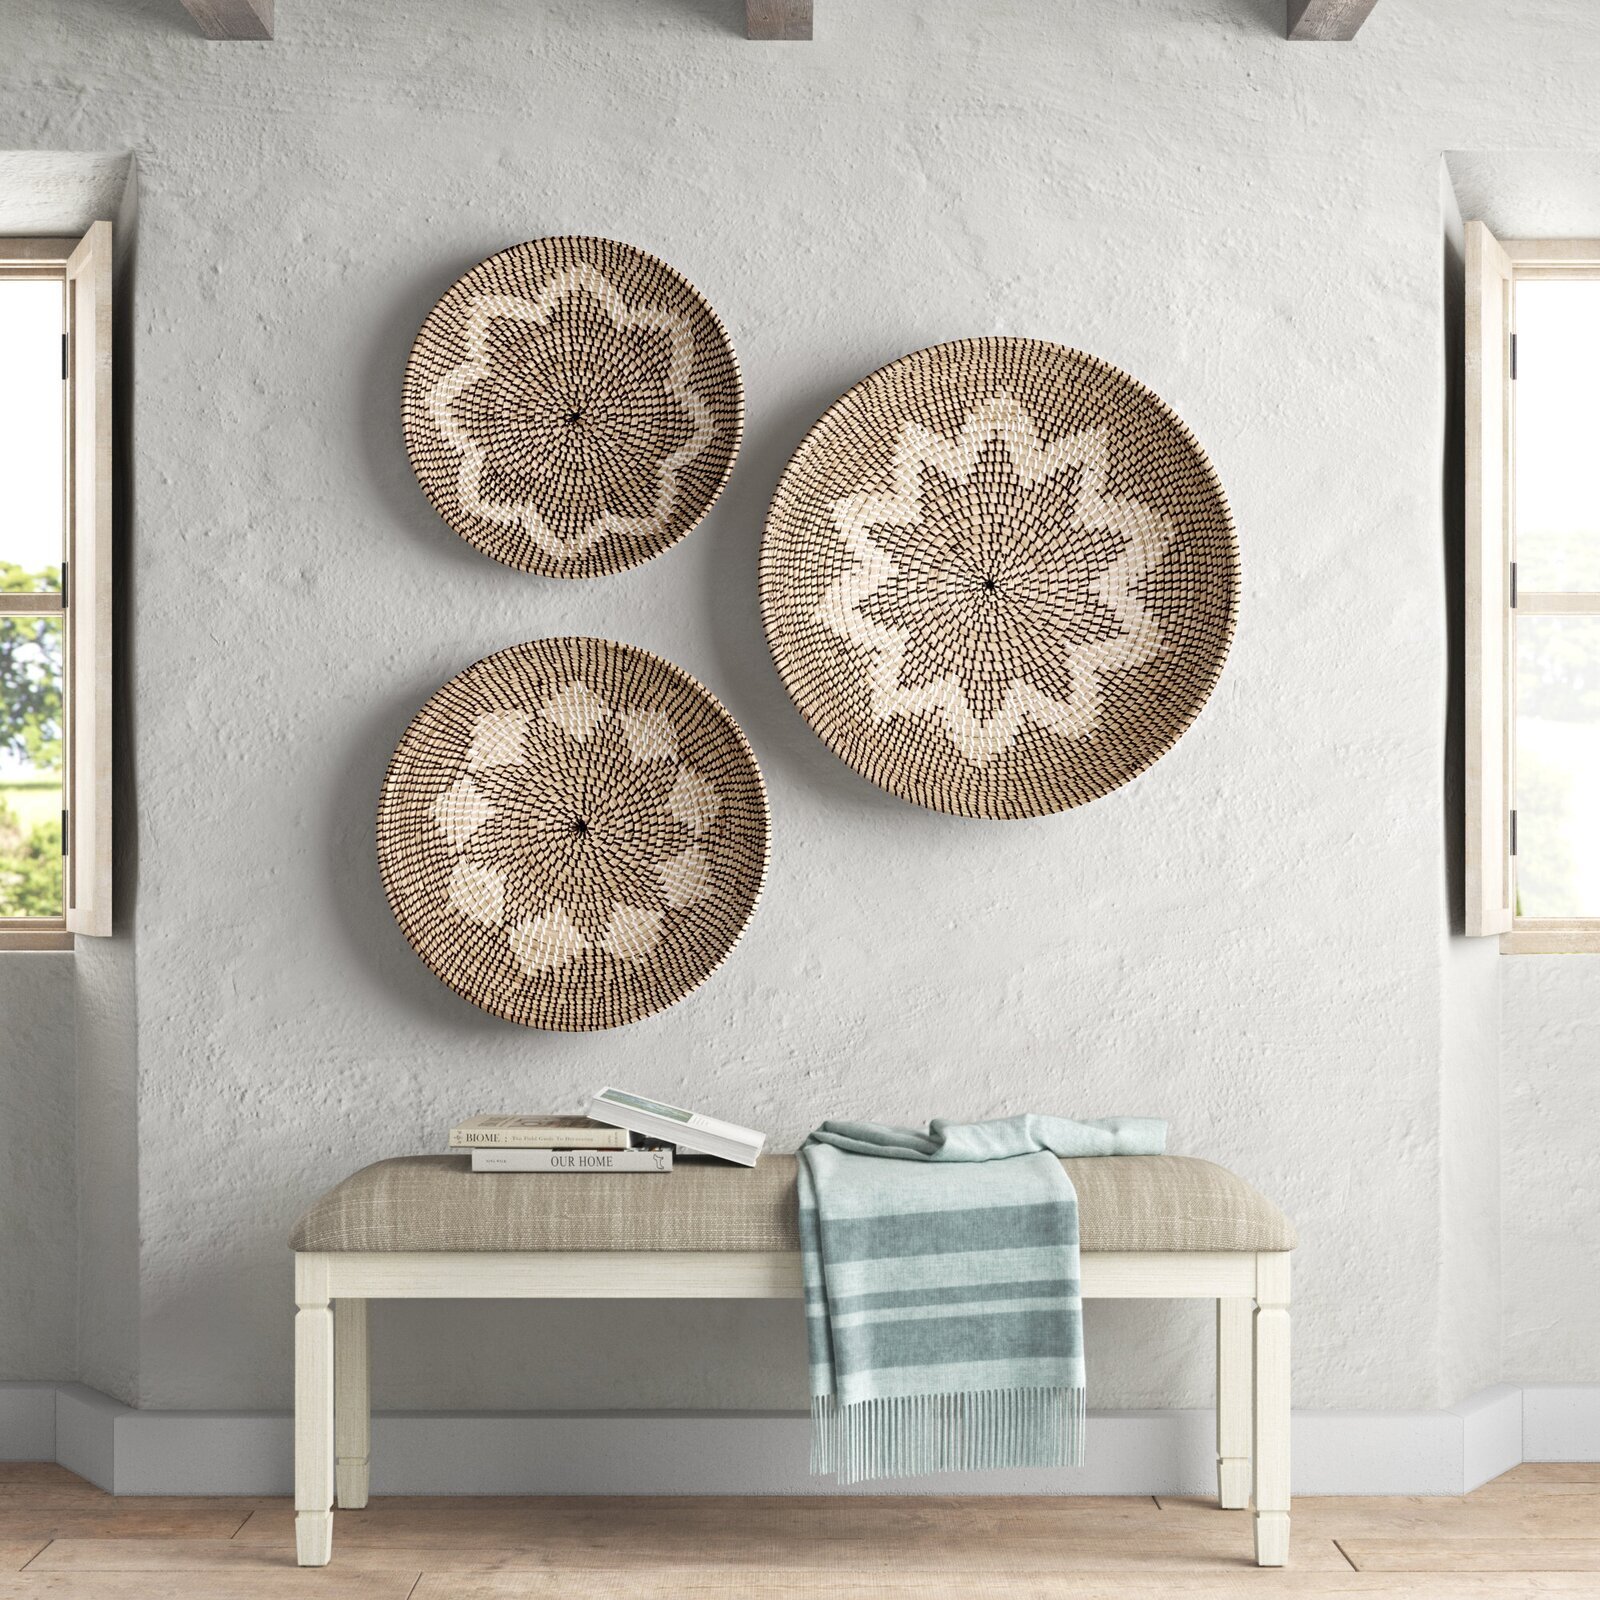 Large Decorative Wall Plates - Etsy UK